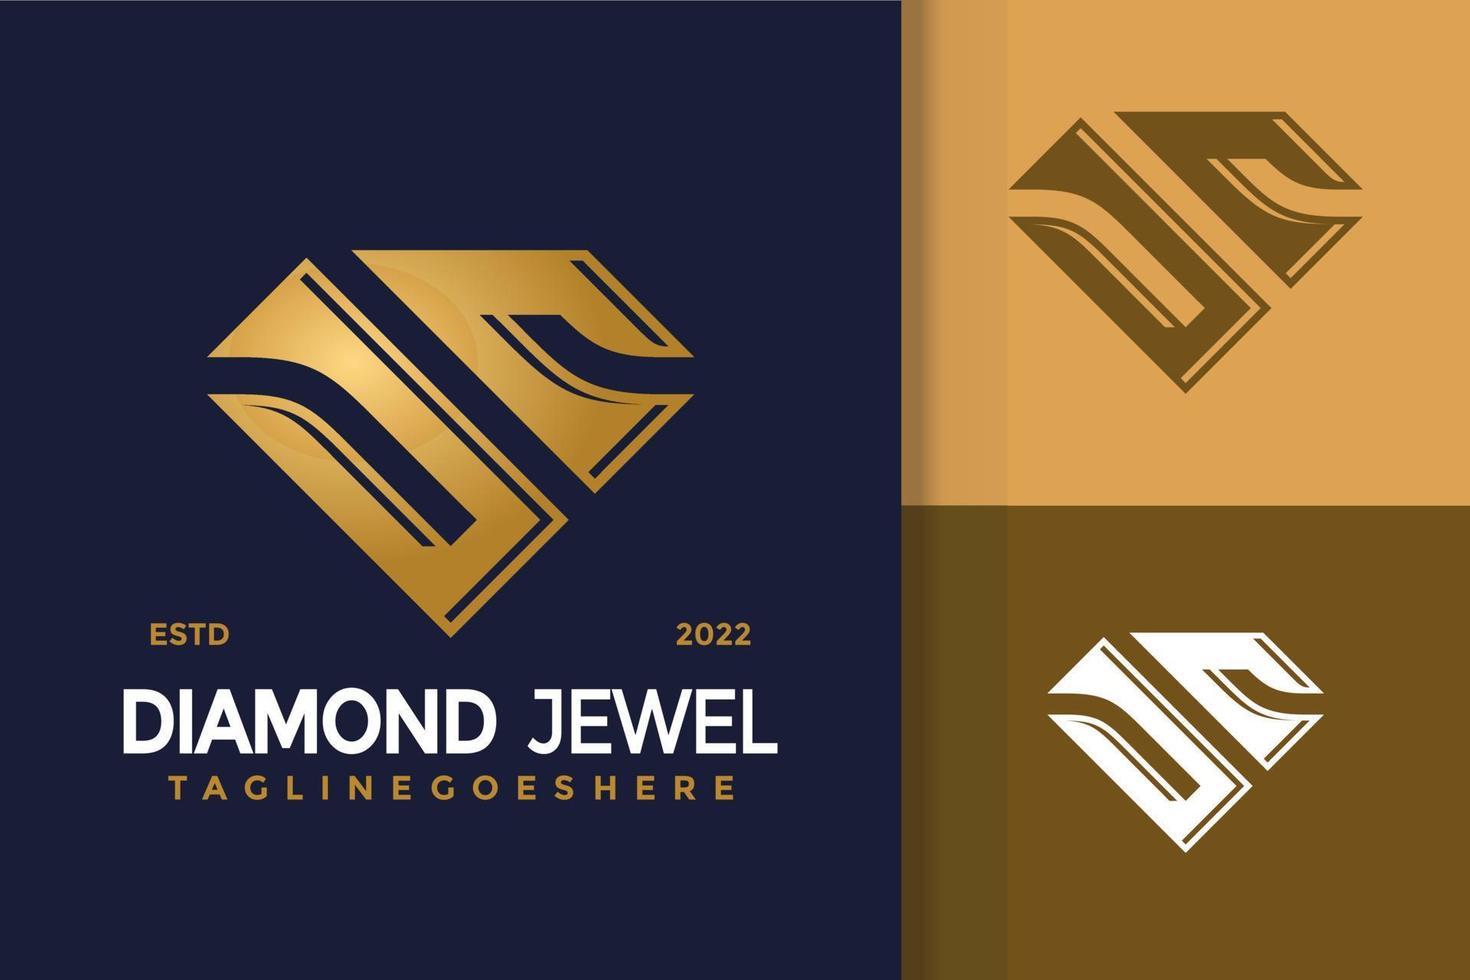 création de logo lettre j et c diamant, vecteur de logos d'identité de marque, logo moderne, modèle d'illustration vectorielle de dessins de logo